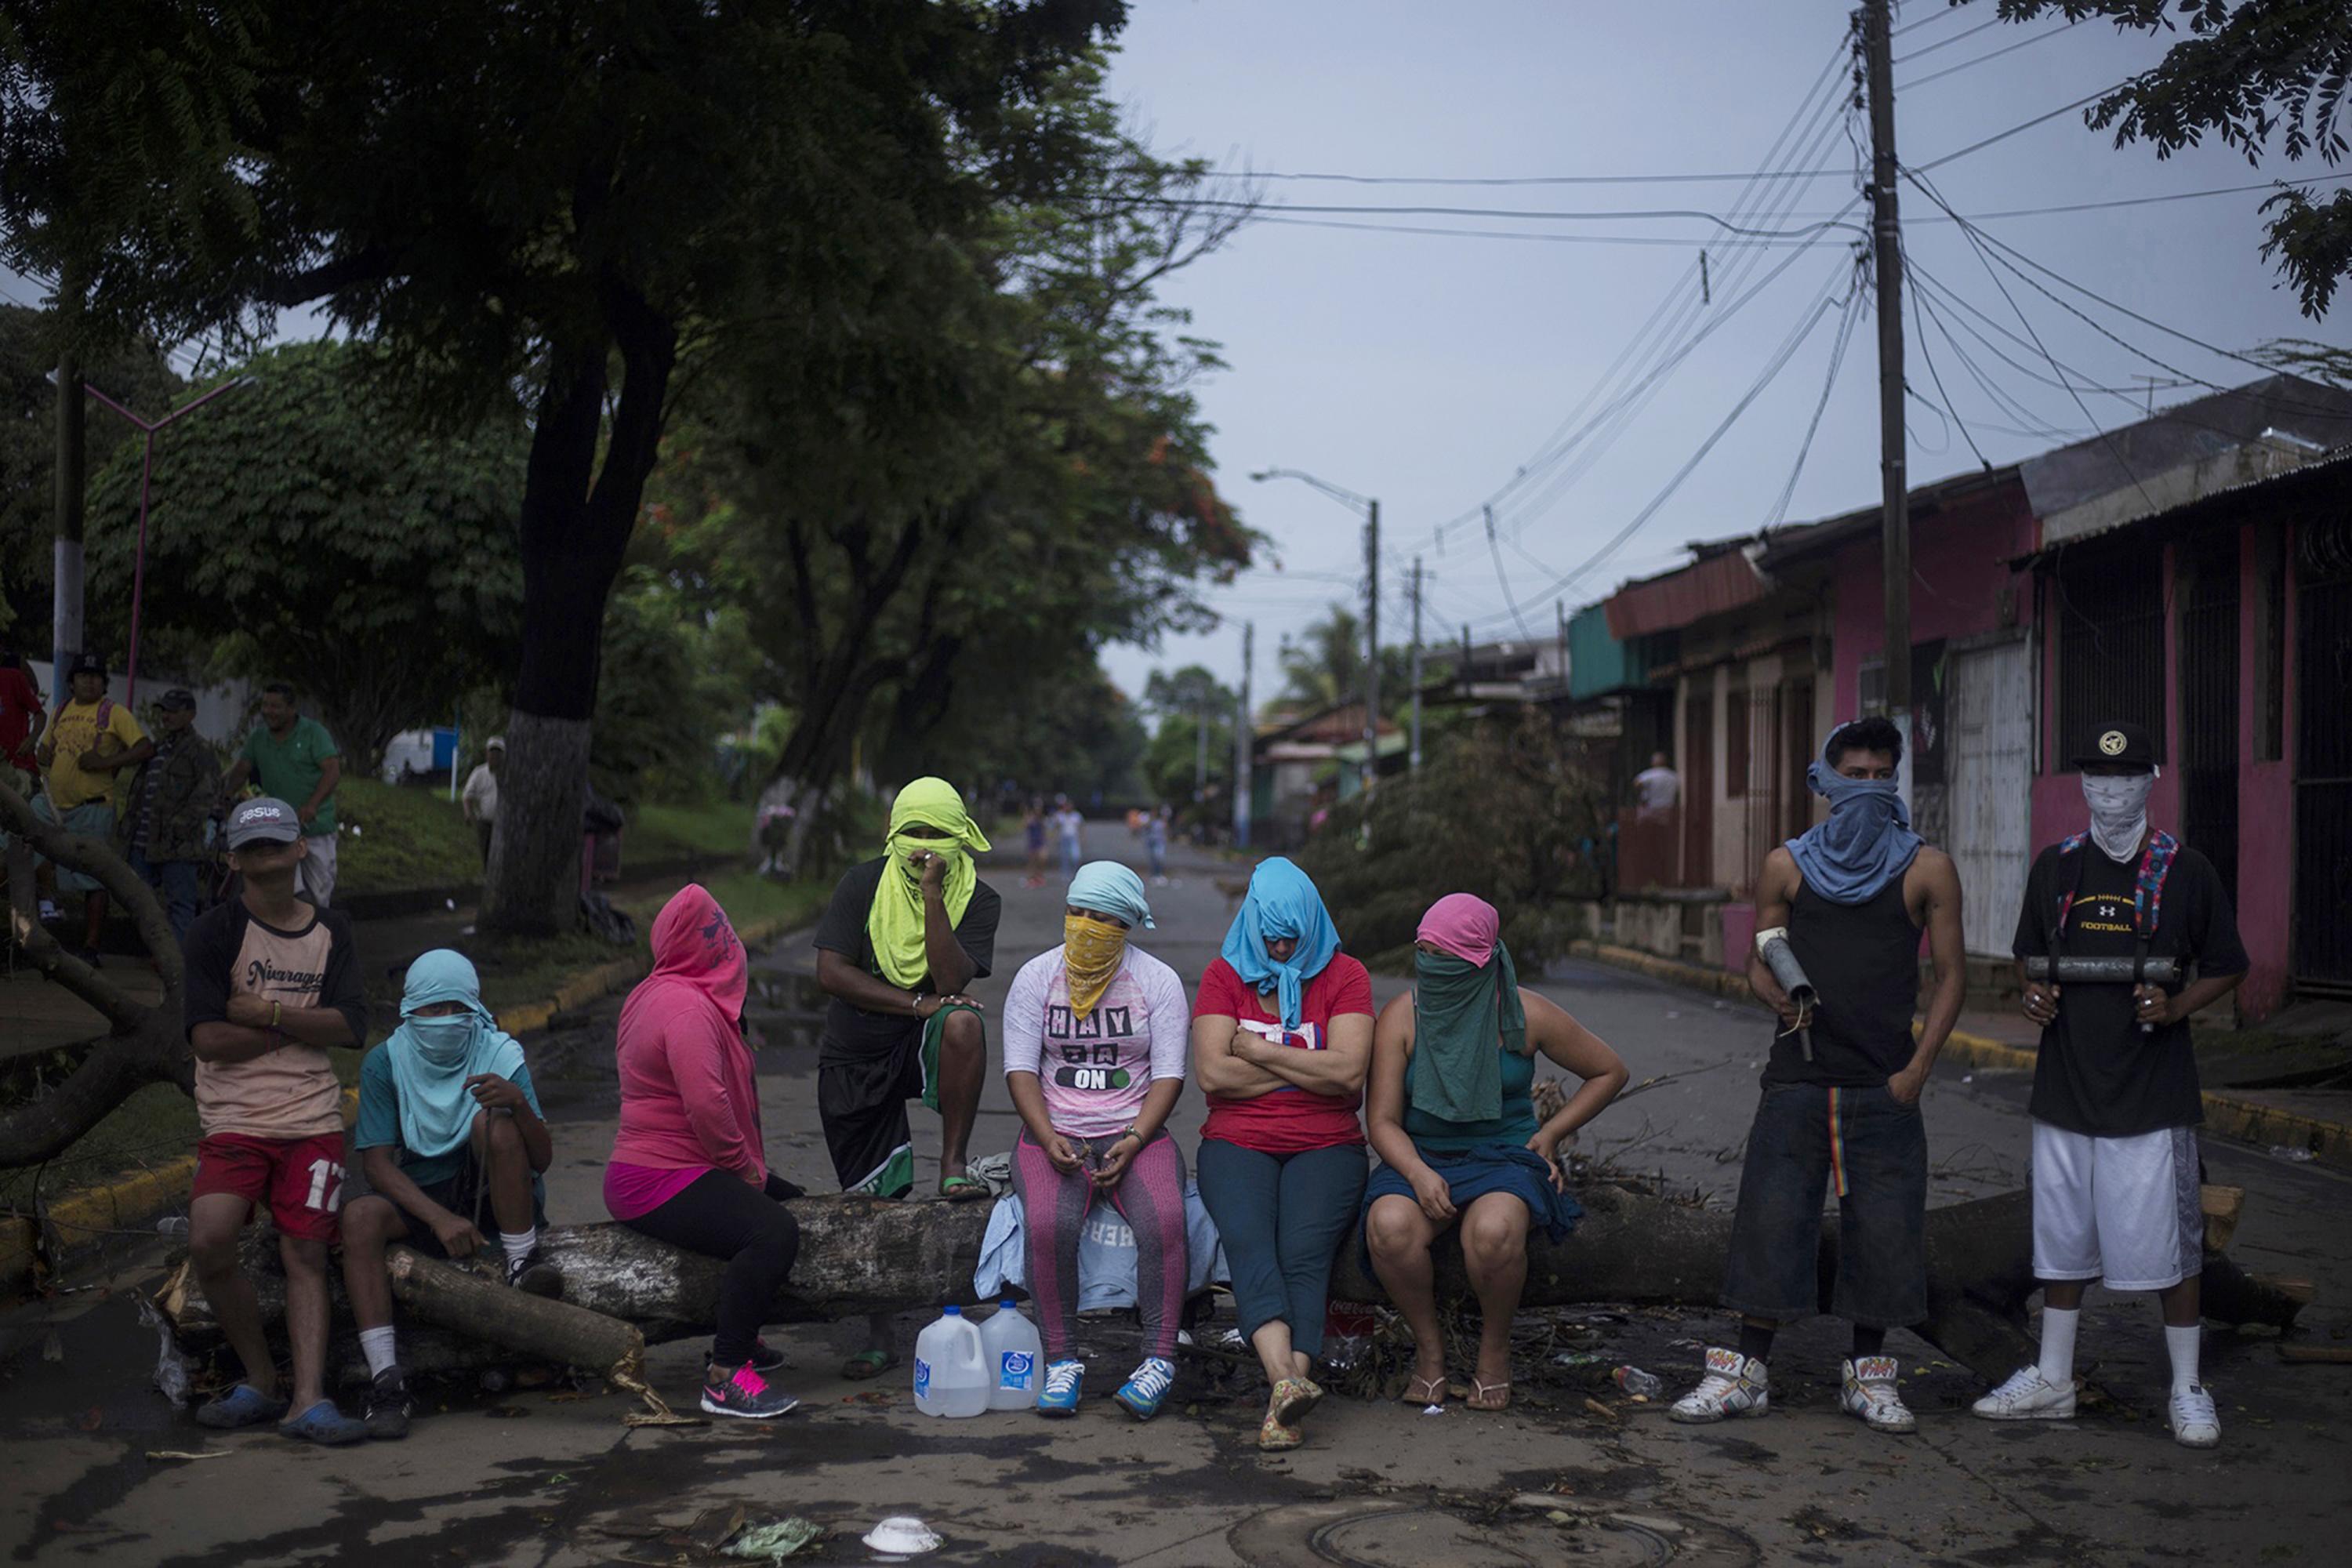 Habitantes del municipio de Masaya, Nicaragua, cerraron en 2018 uno de los accesos principales para evitar el paso de la Policía a esa localidad. Los habitantes armaron barricadas con los adoquines que recubren la calle e intensificaron las protestas contra el régimen Ortega - Murillo, que provocaron una profunda crisis política. Foto de El Faro: Víctor Peña.